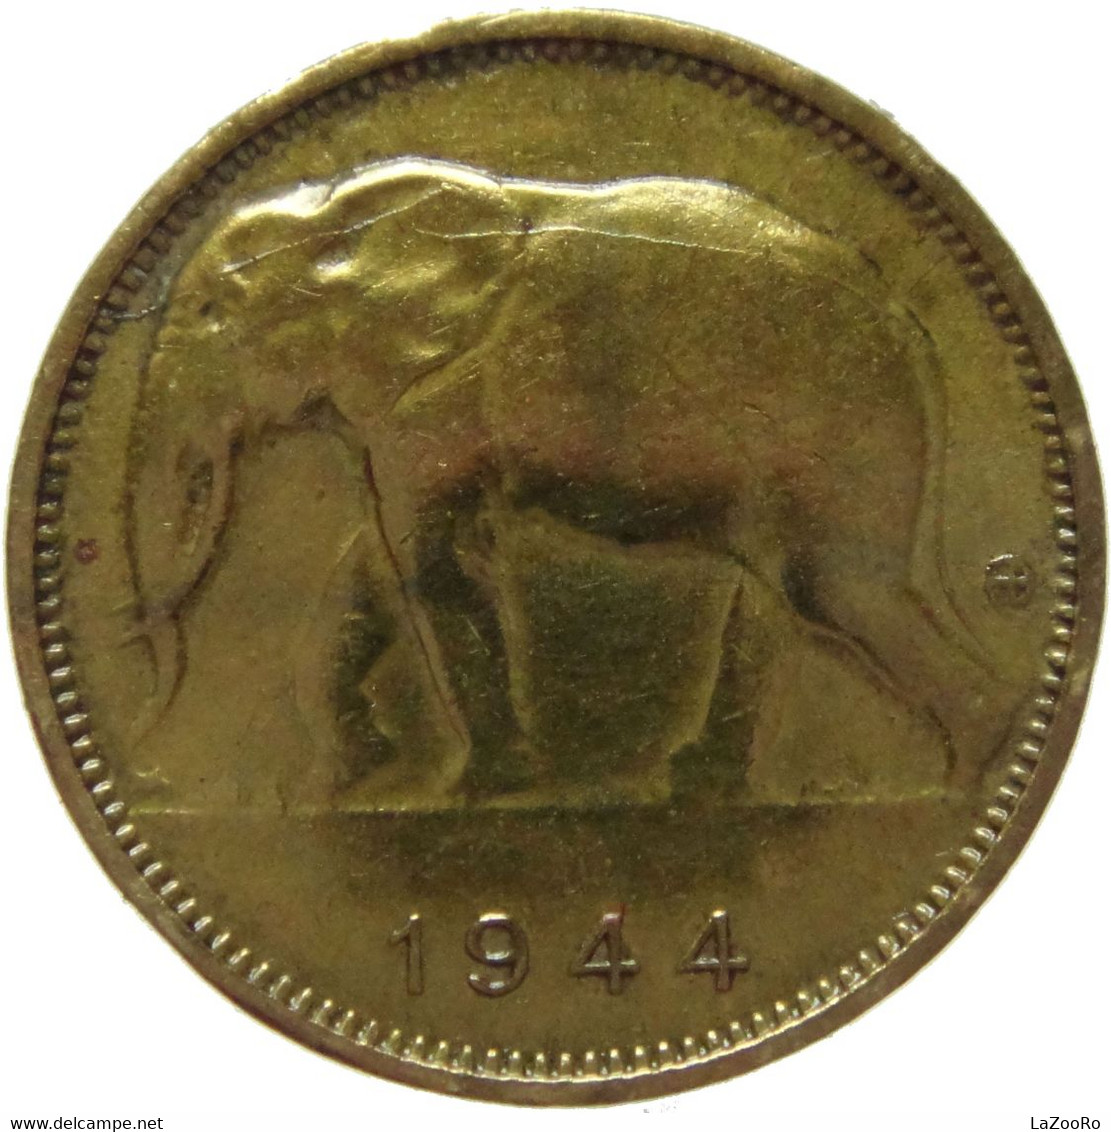 LaZooRo: Belgian Congo 1 Franc 1944 XF - 1934-1945: Leopold III.